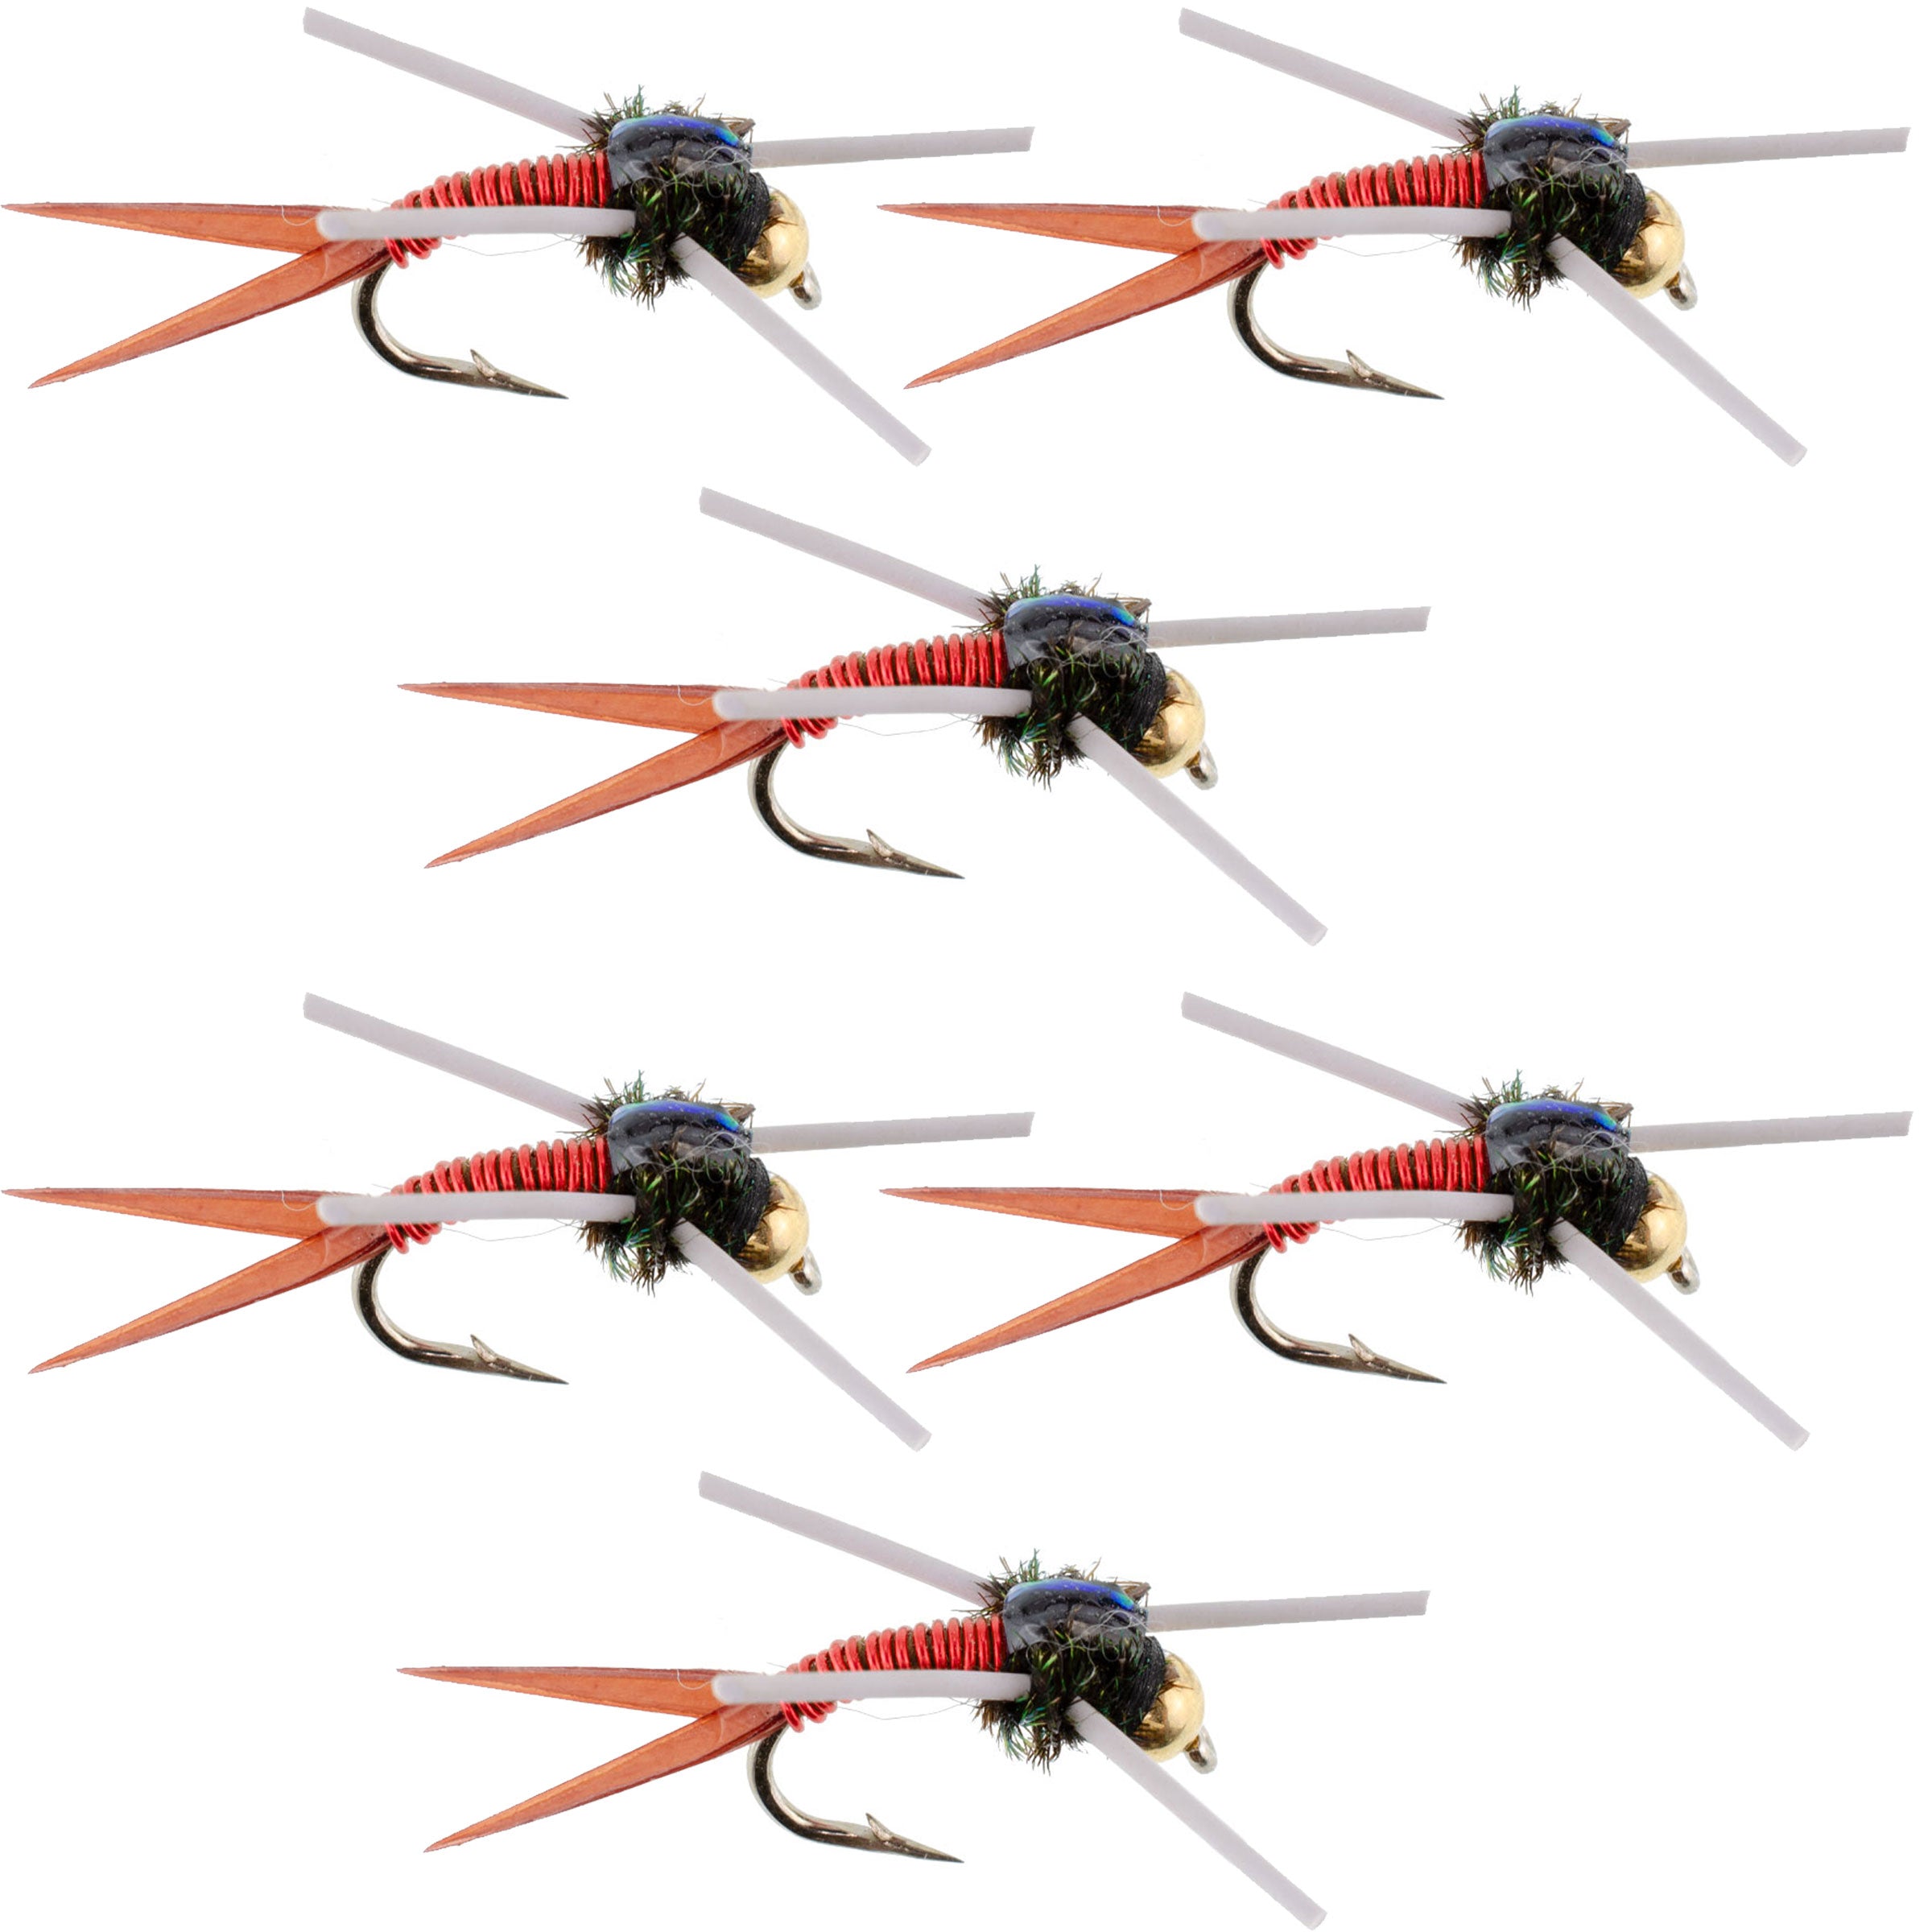 Tungsten Bead Head Rubber Legs Red Copper John Nymph Fly Fishing Flies - Set of 6 Flies Hook Size 14